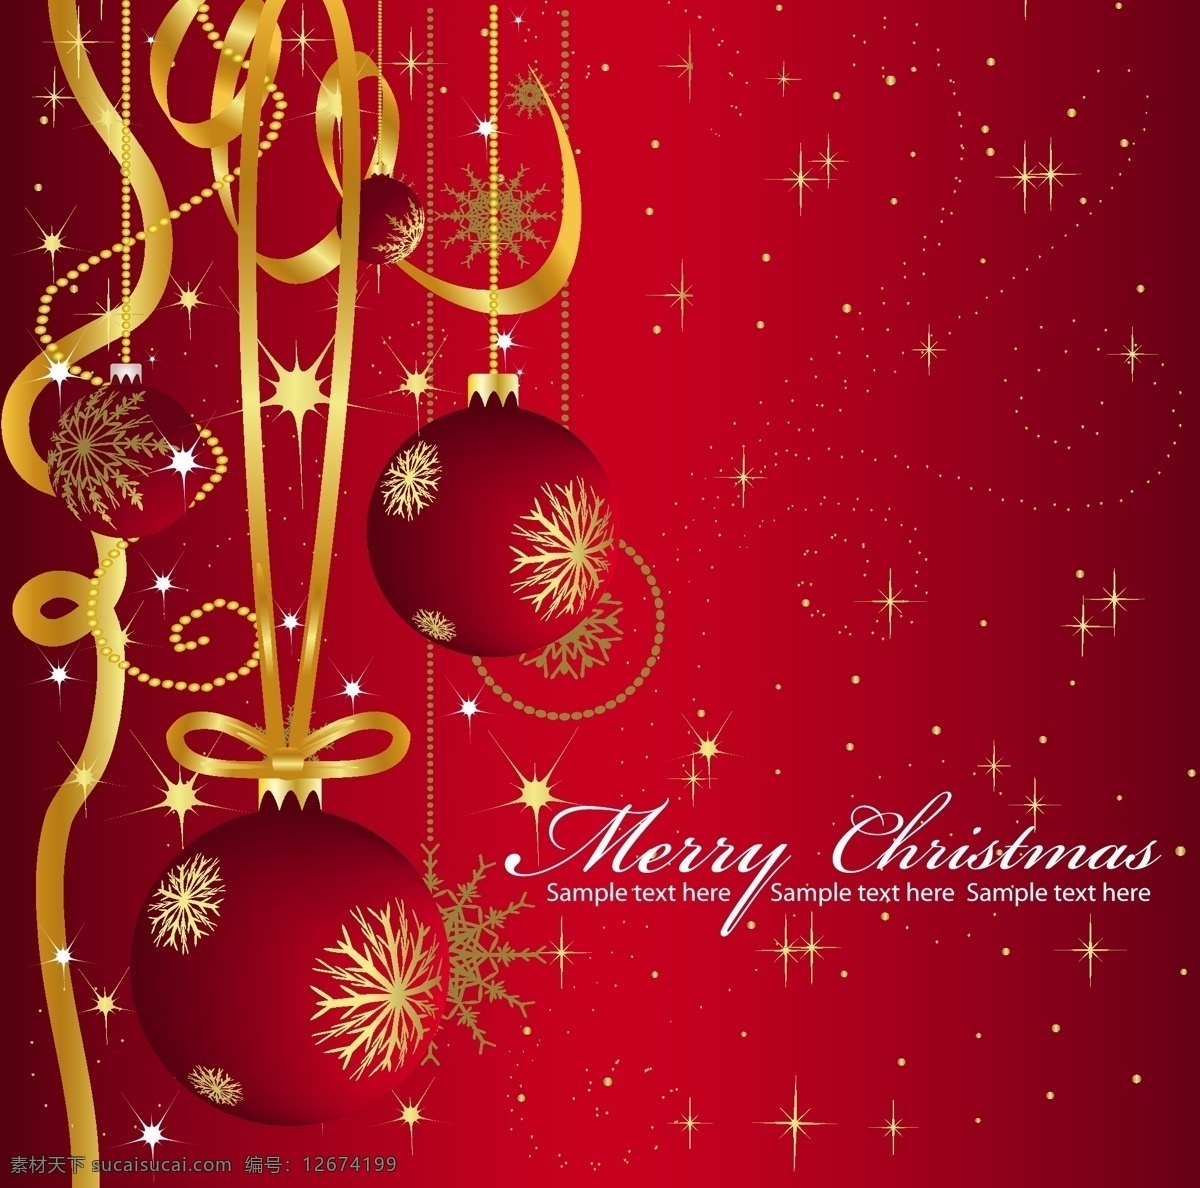 矢量 圣诞节 丝带 挂 球 雪花 闪光 动感 线条 merry christmas 背景 红色 节日素材